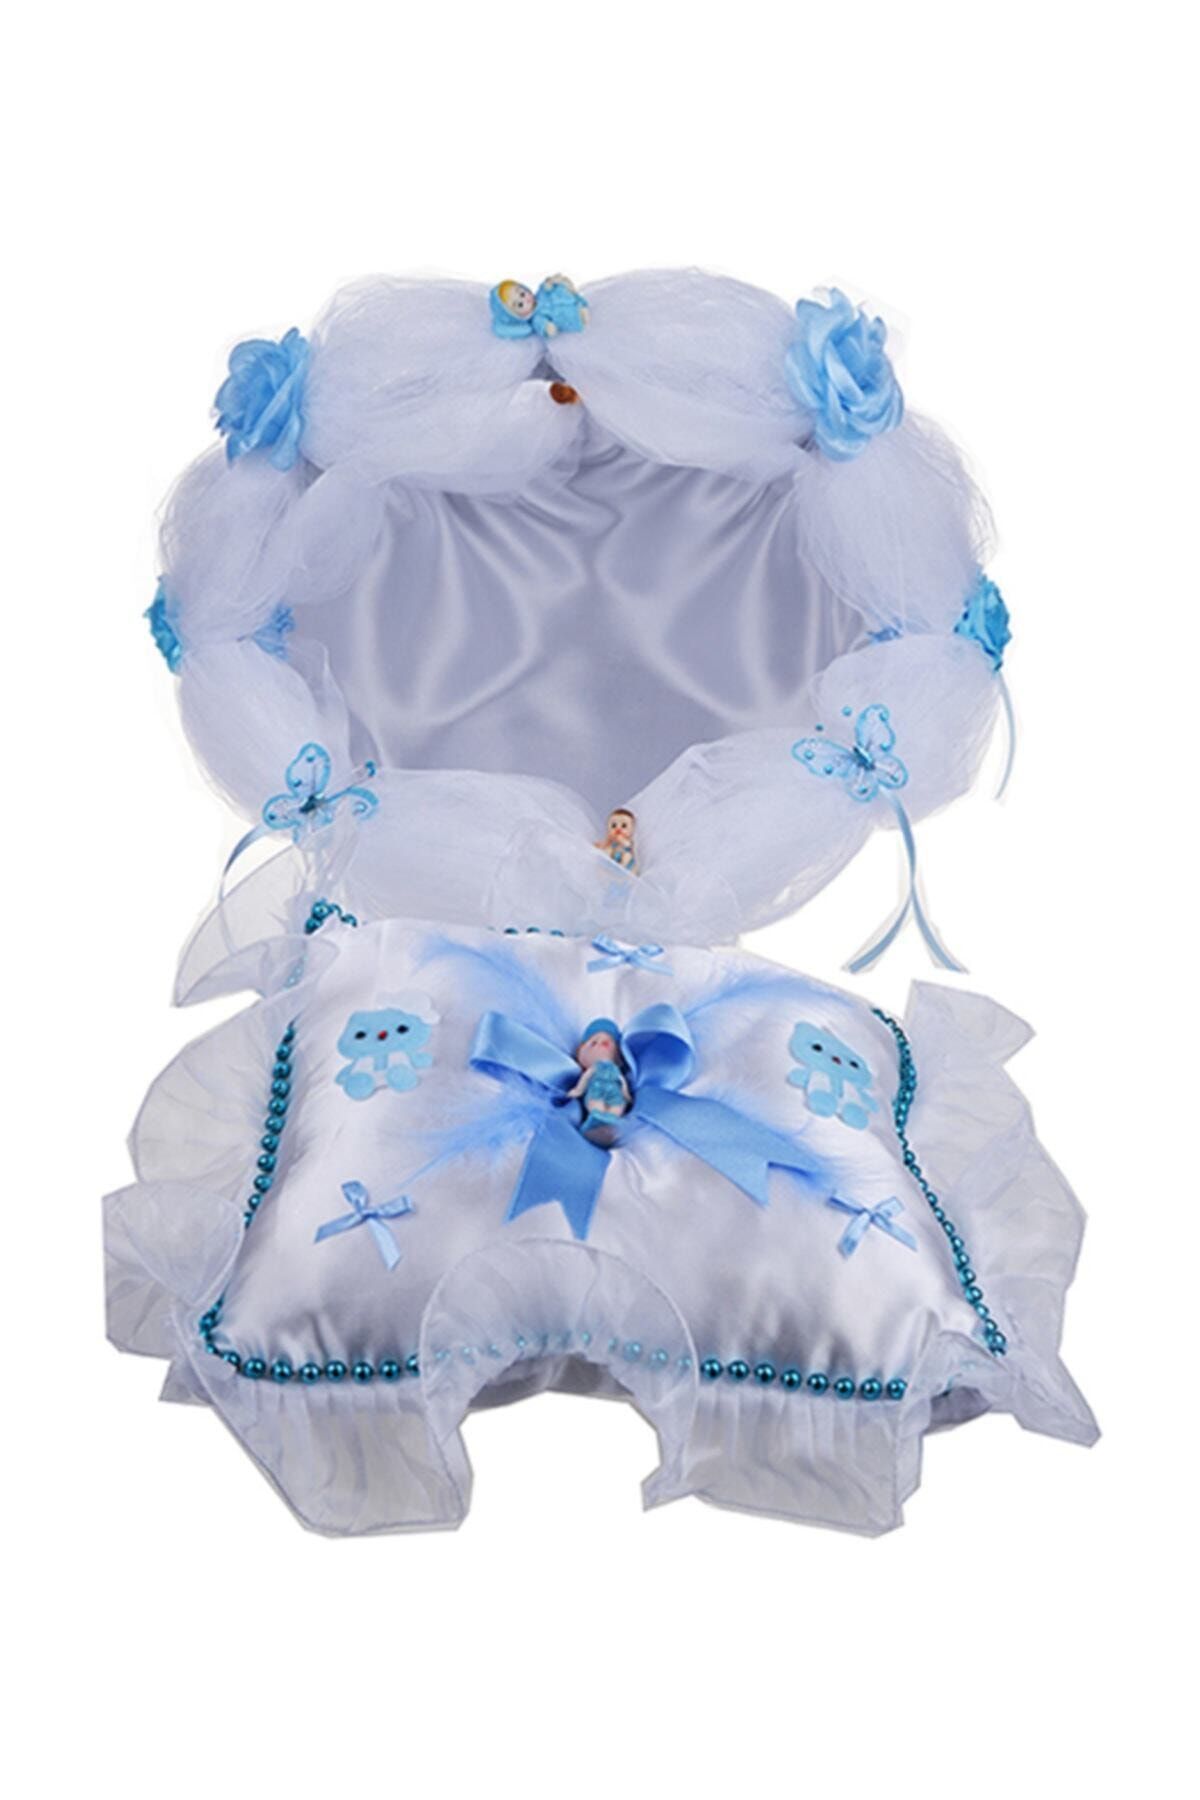 Cansüs Sepet Ve Takı Yastığı Bebek Seti Mavi